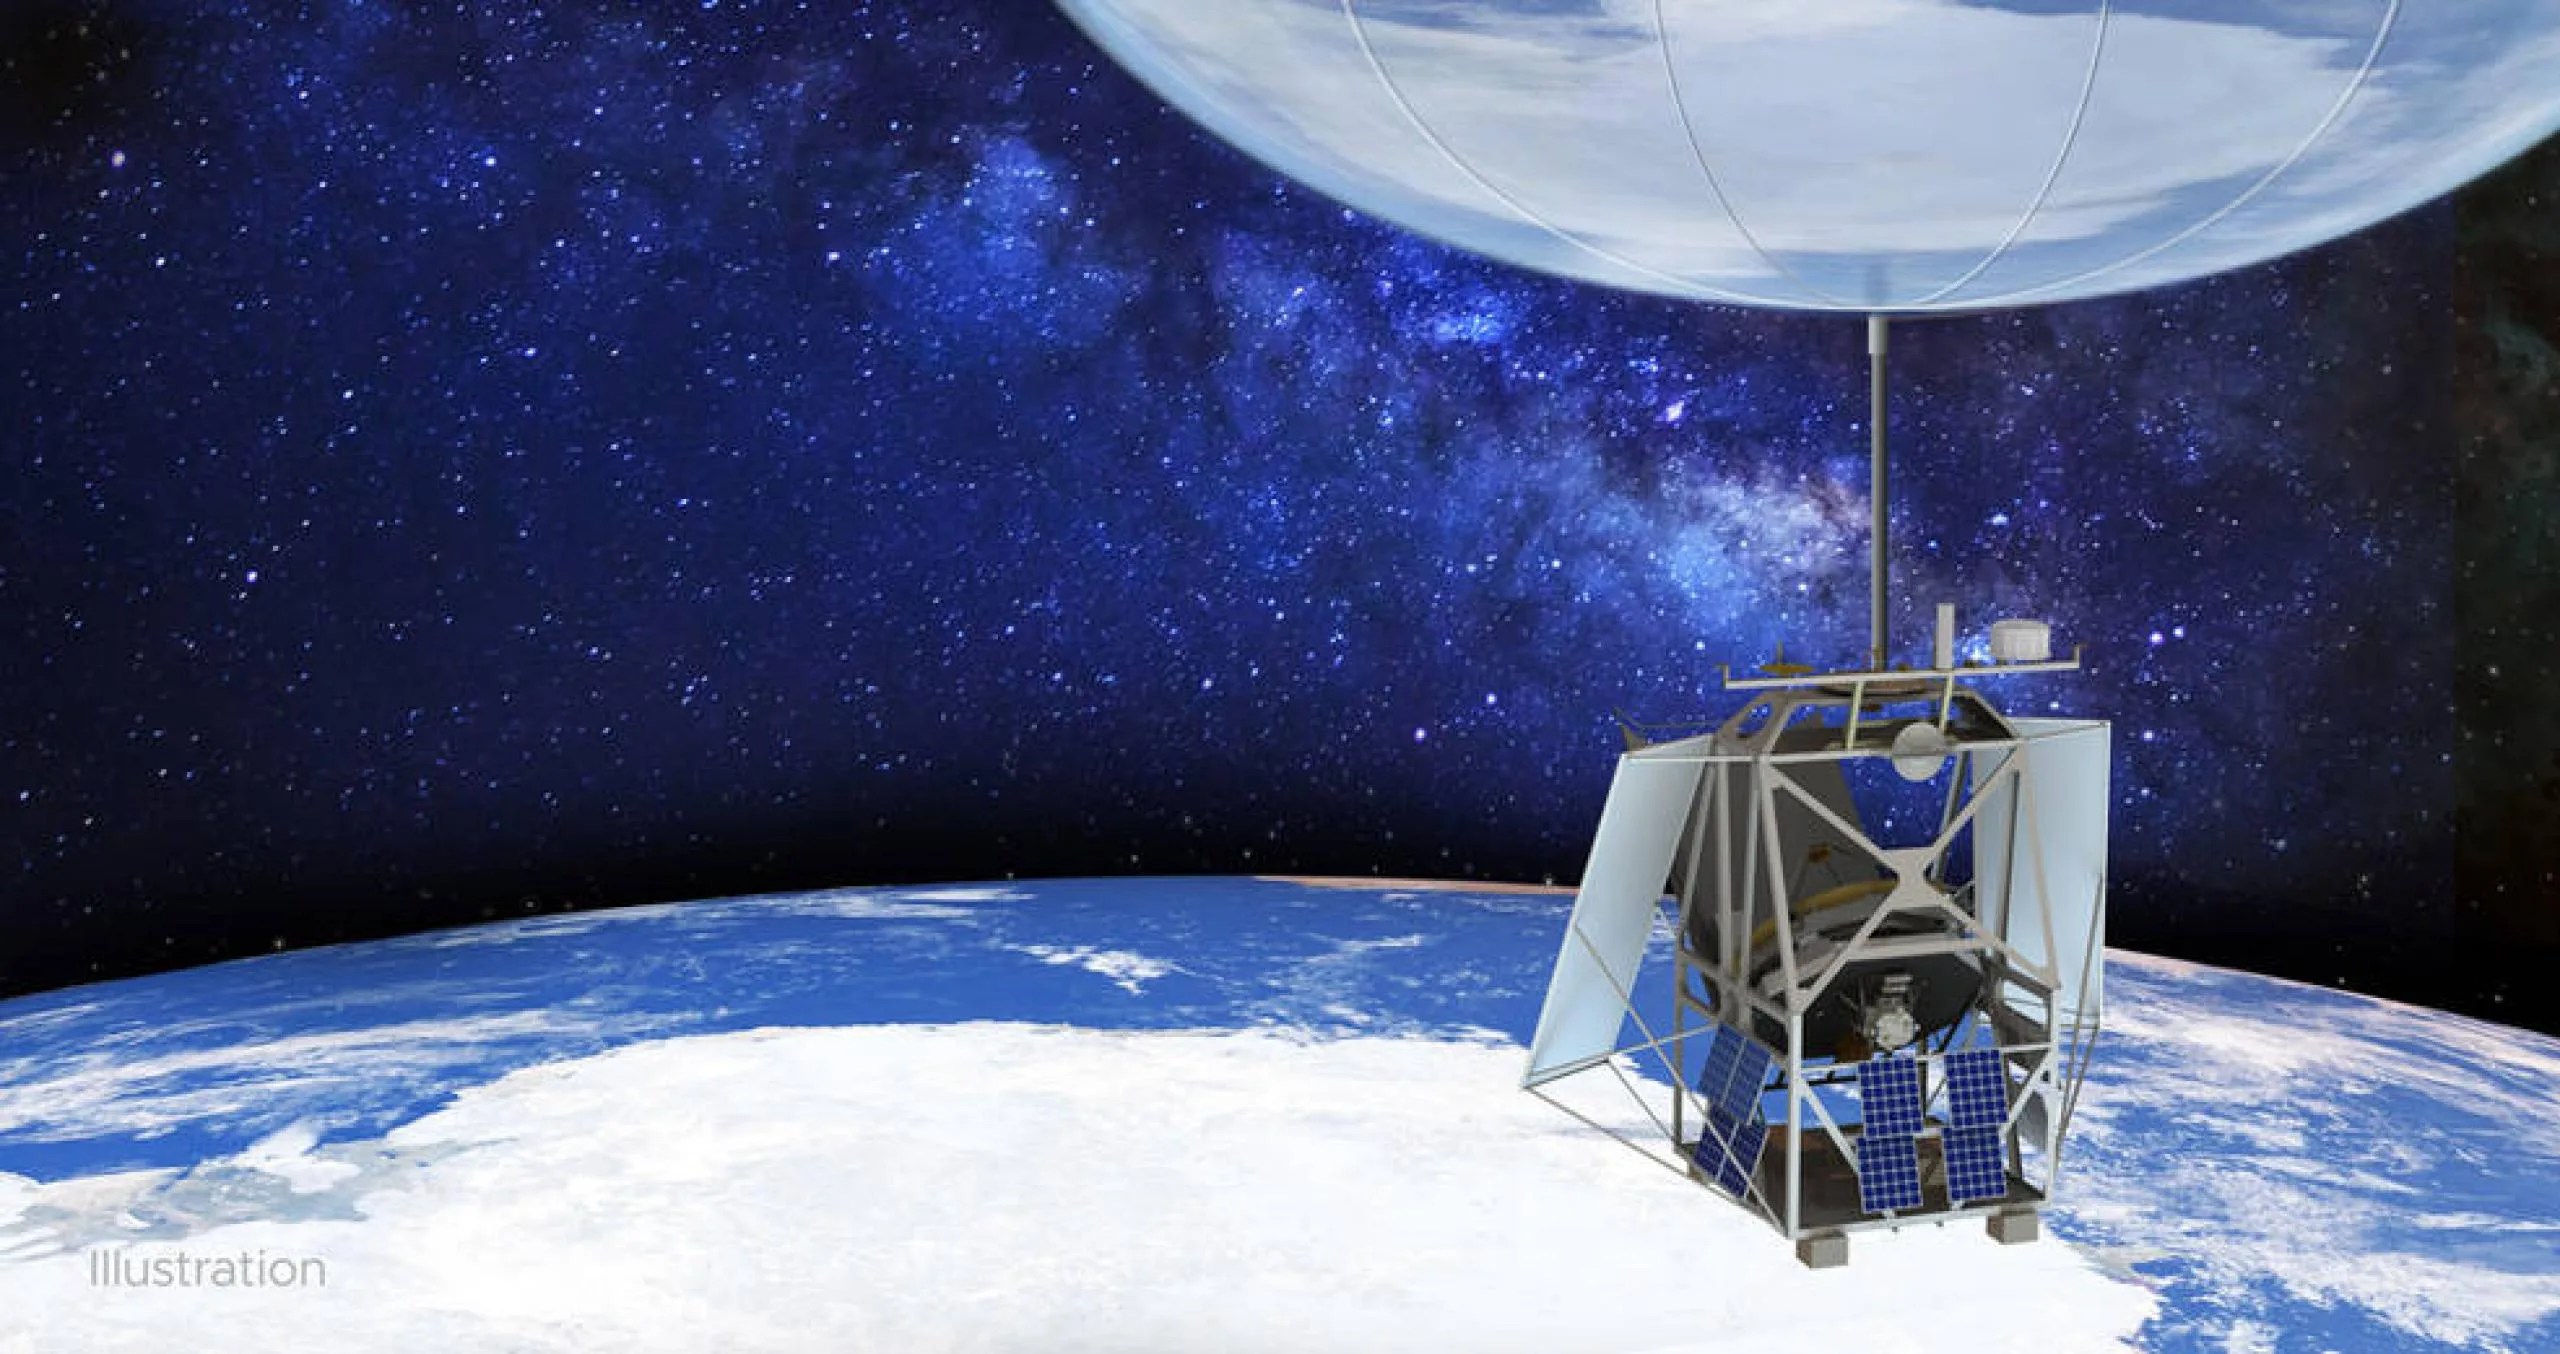 Elevada por un globo estratosférico, como se muestra en esta ilustración, la misión ASTHROS de la NASA puede alcanzar una altitud de 40 kilómetros (130,000 pies). Desde esa altura, el telescopio puede detectar longitudes de ondas de luz que están bloqueadas por la atmósfera de la Tierra y no pueden ser observadas desde el suelo. Créditos: NASA/JPL-Caltech